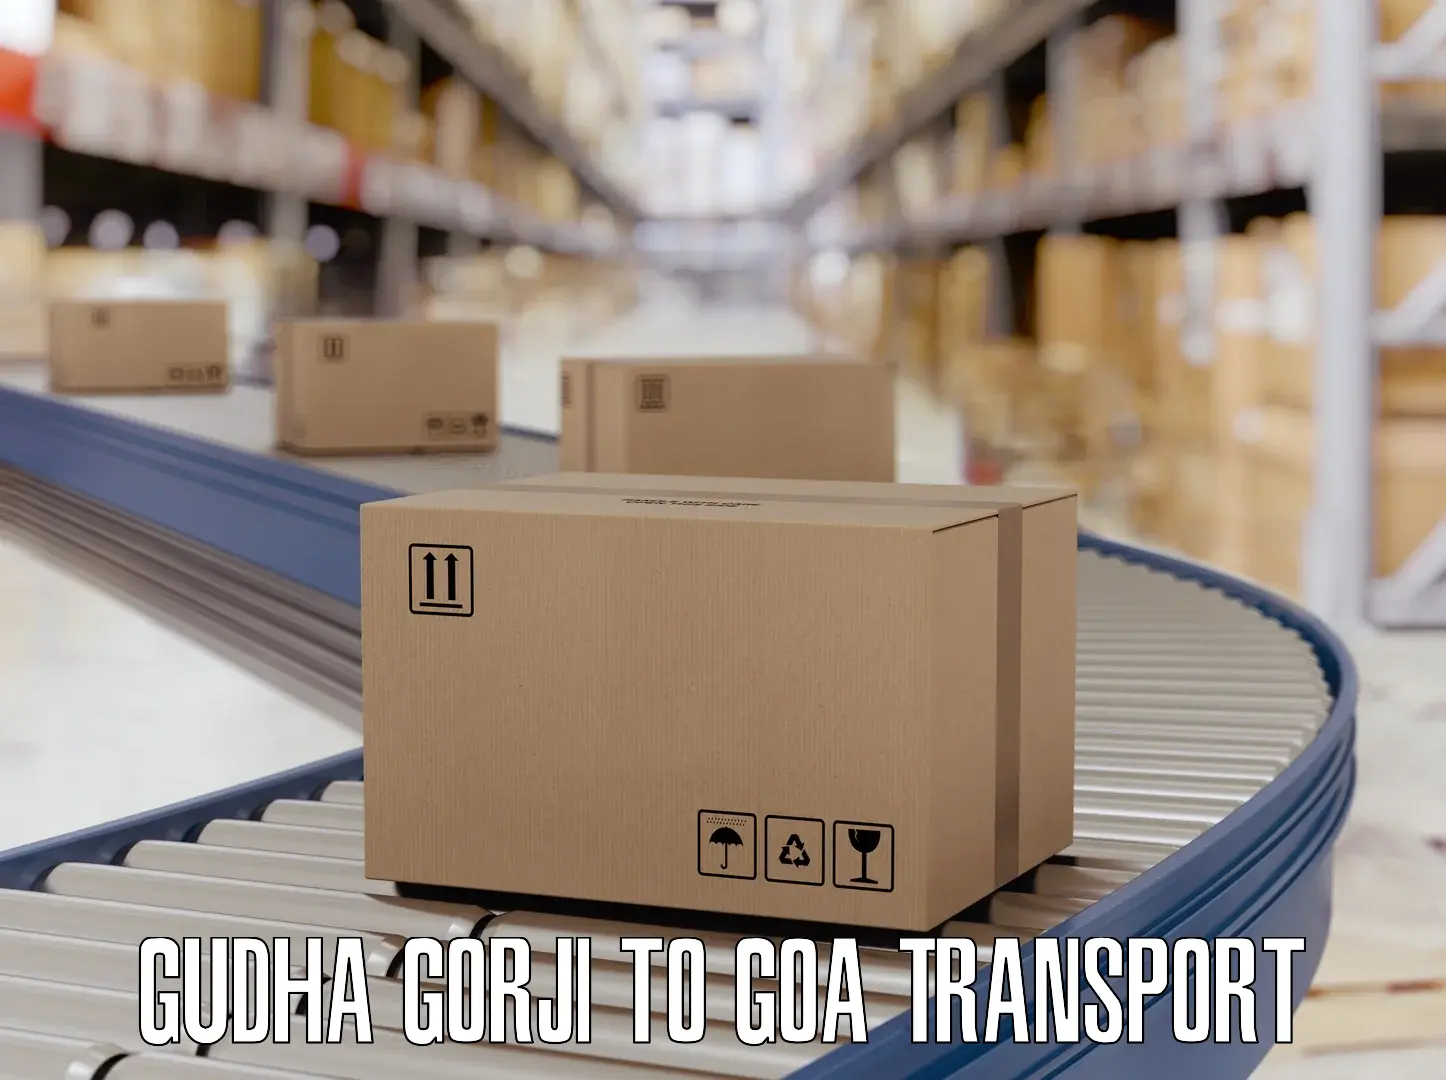 Delivery service Gudha Gorji to Vasco da Gama